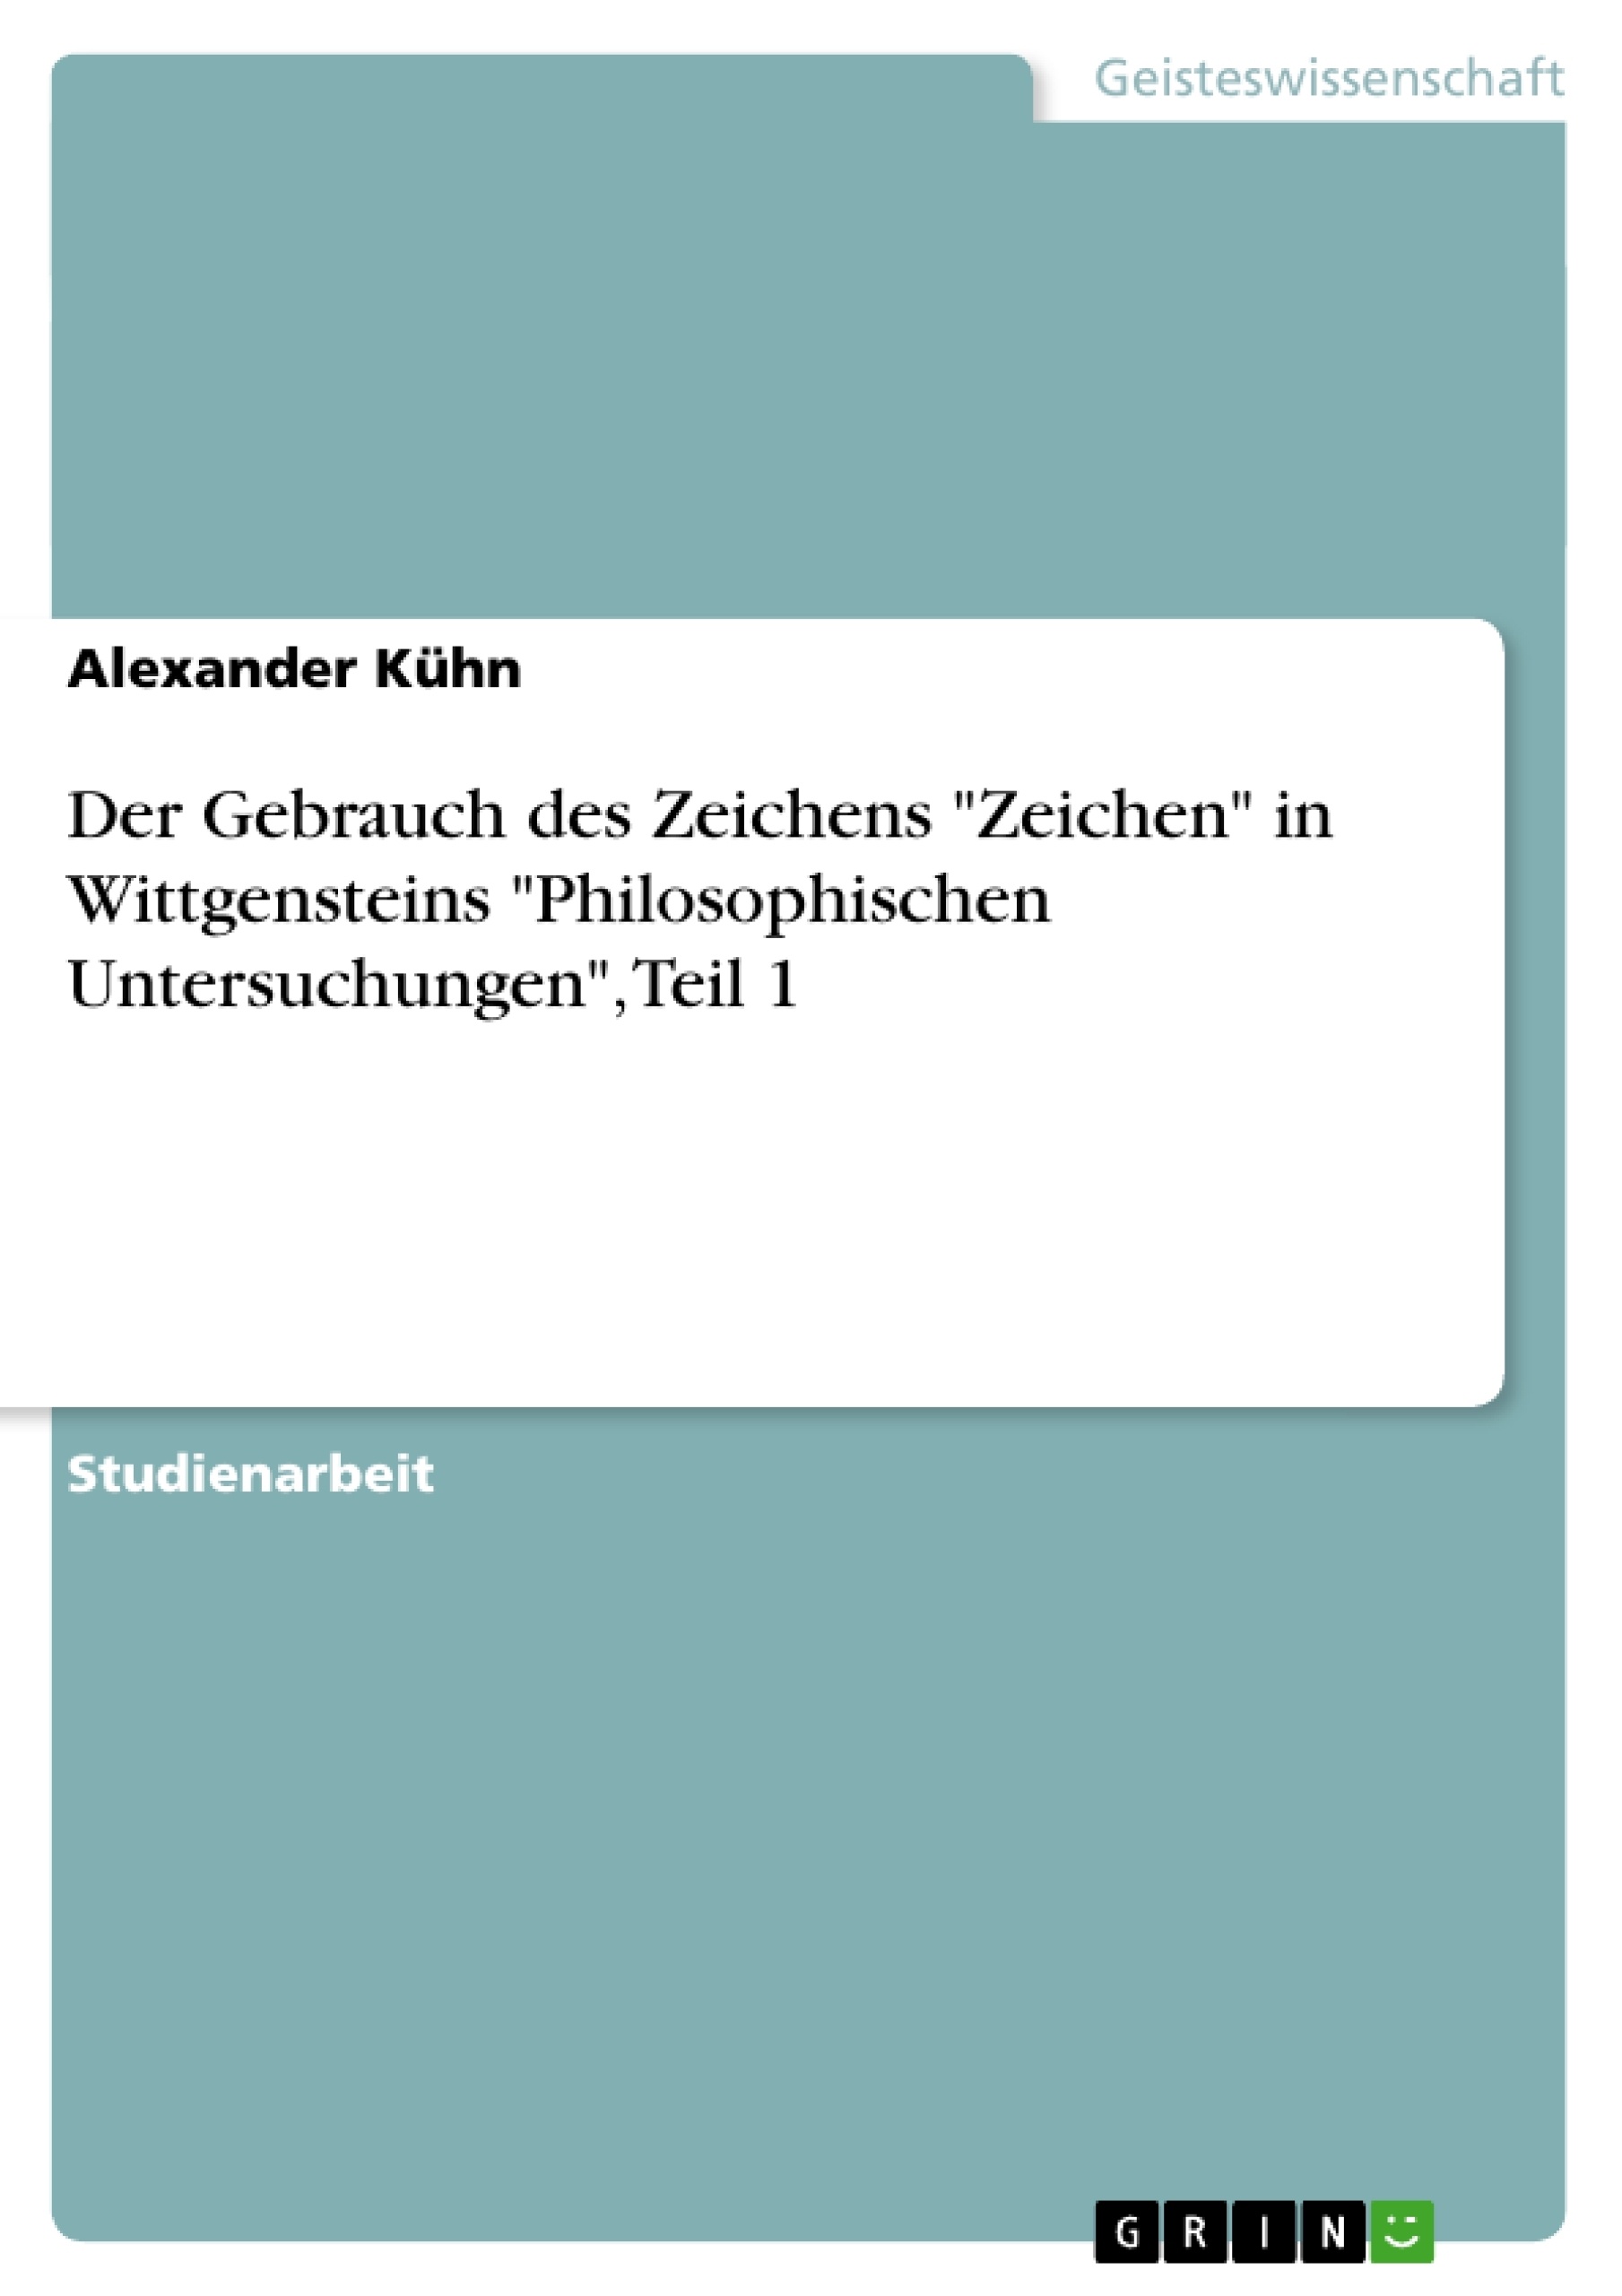 Title: Der Gebrauch des Zeichens "Zeichen" in Wittgensteins "Philosophischen Untersuchungen", Teil 1